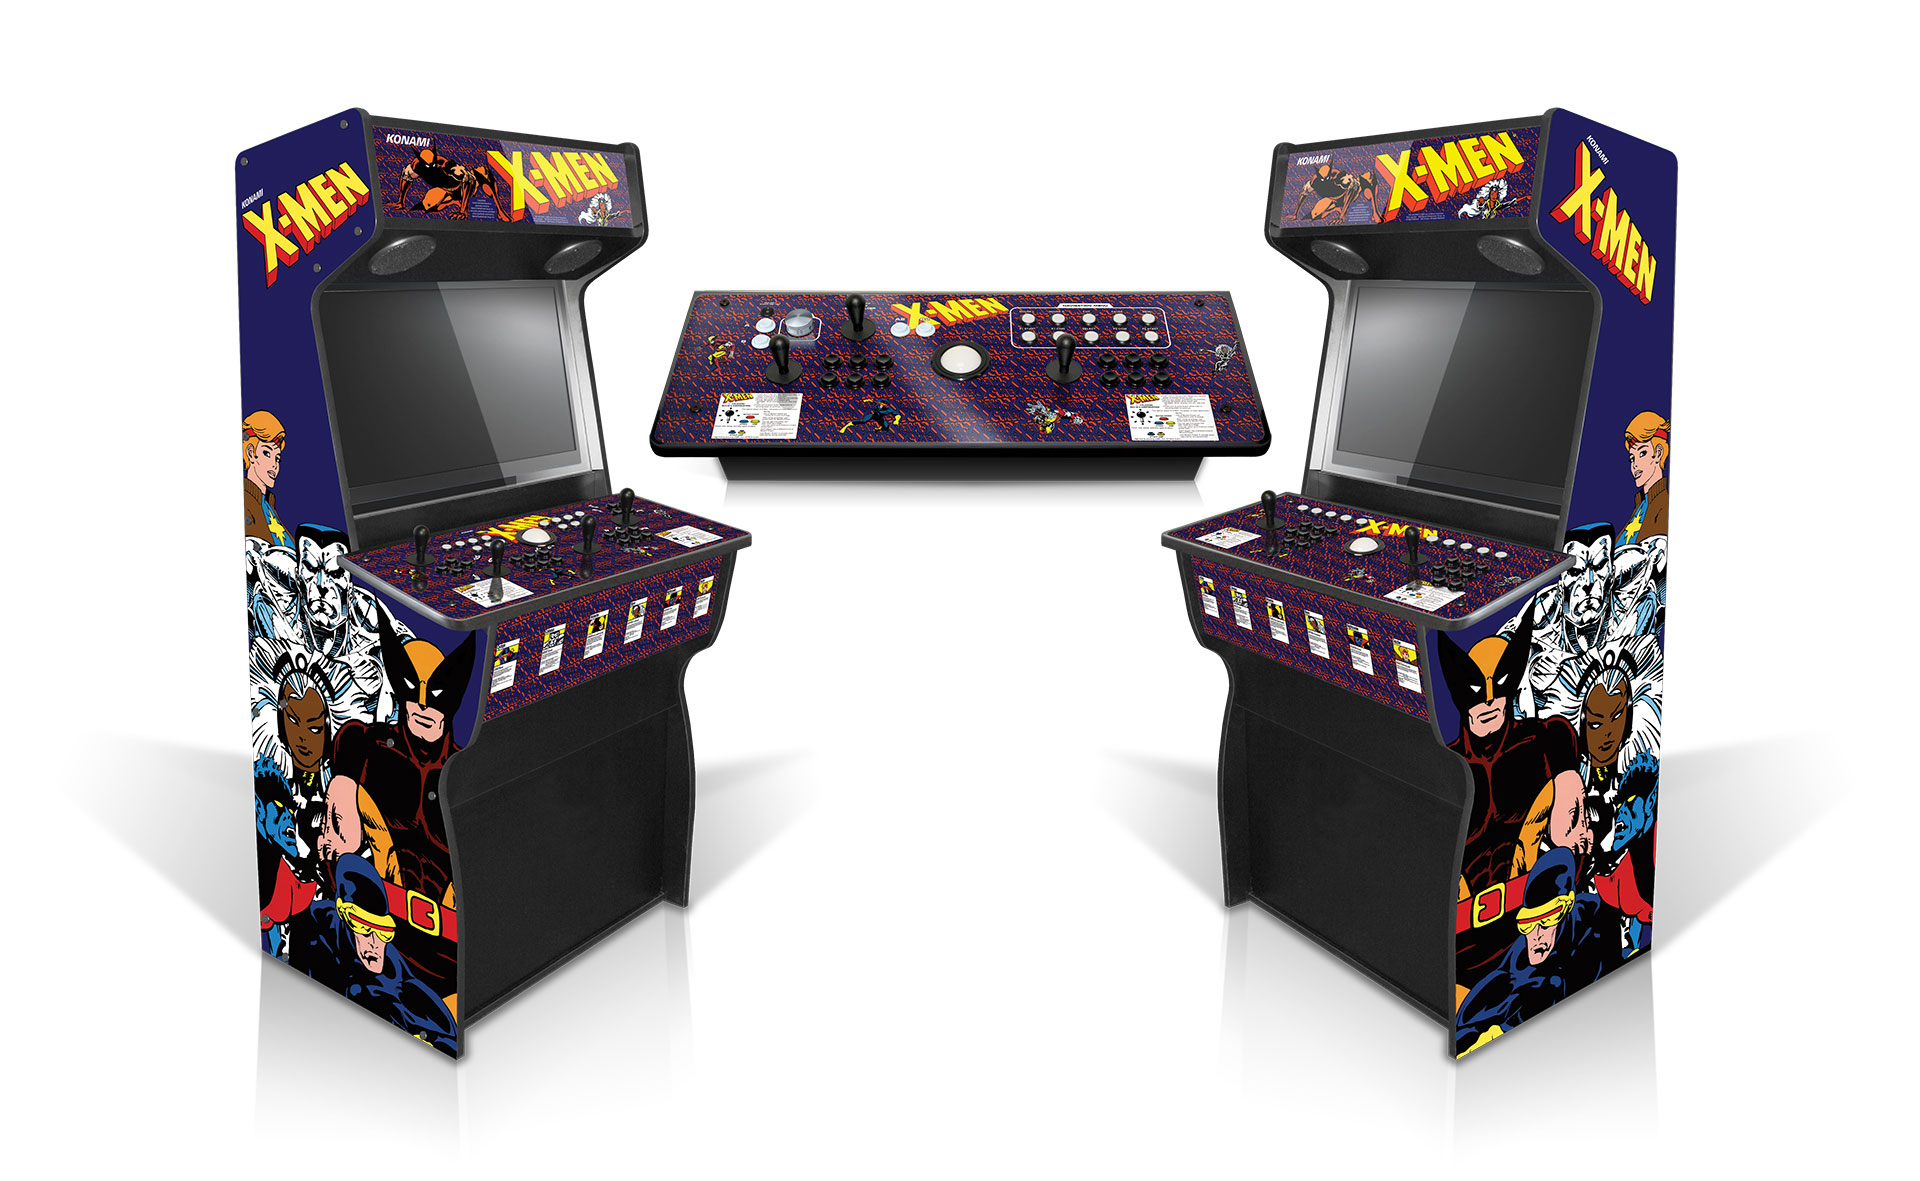 4 Player Arcade Machine - Action Arcades